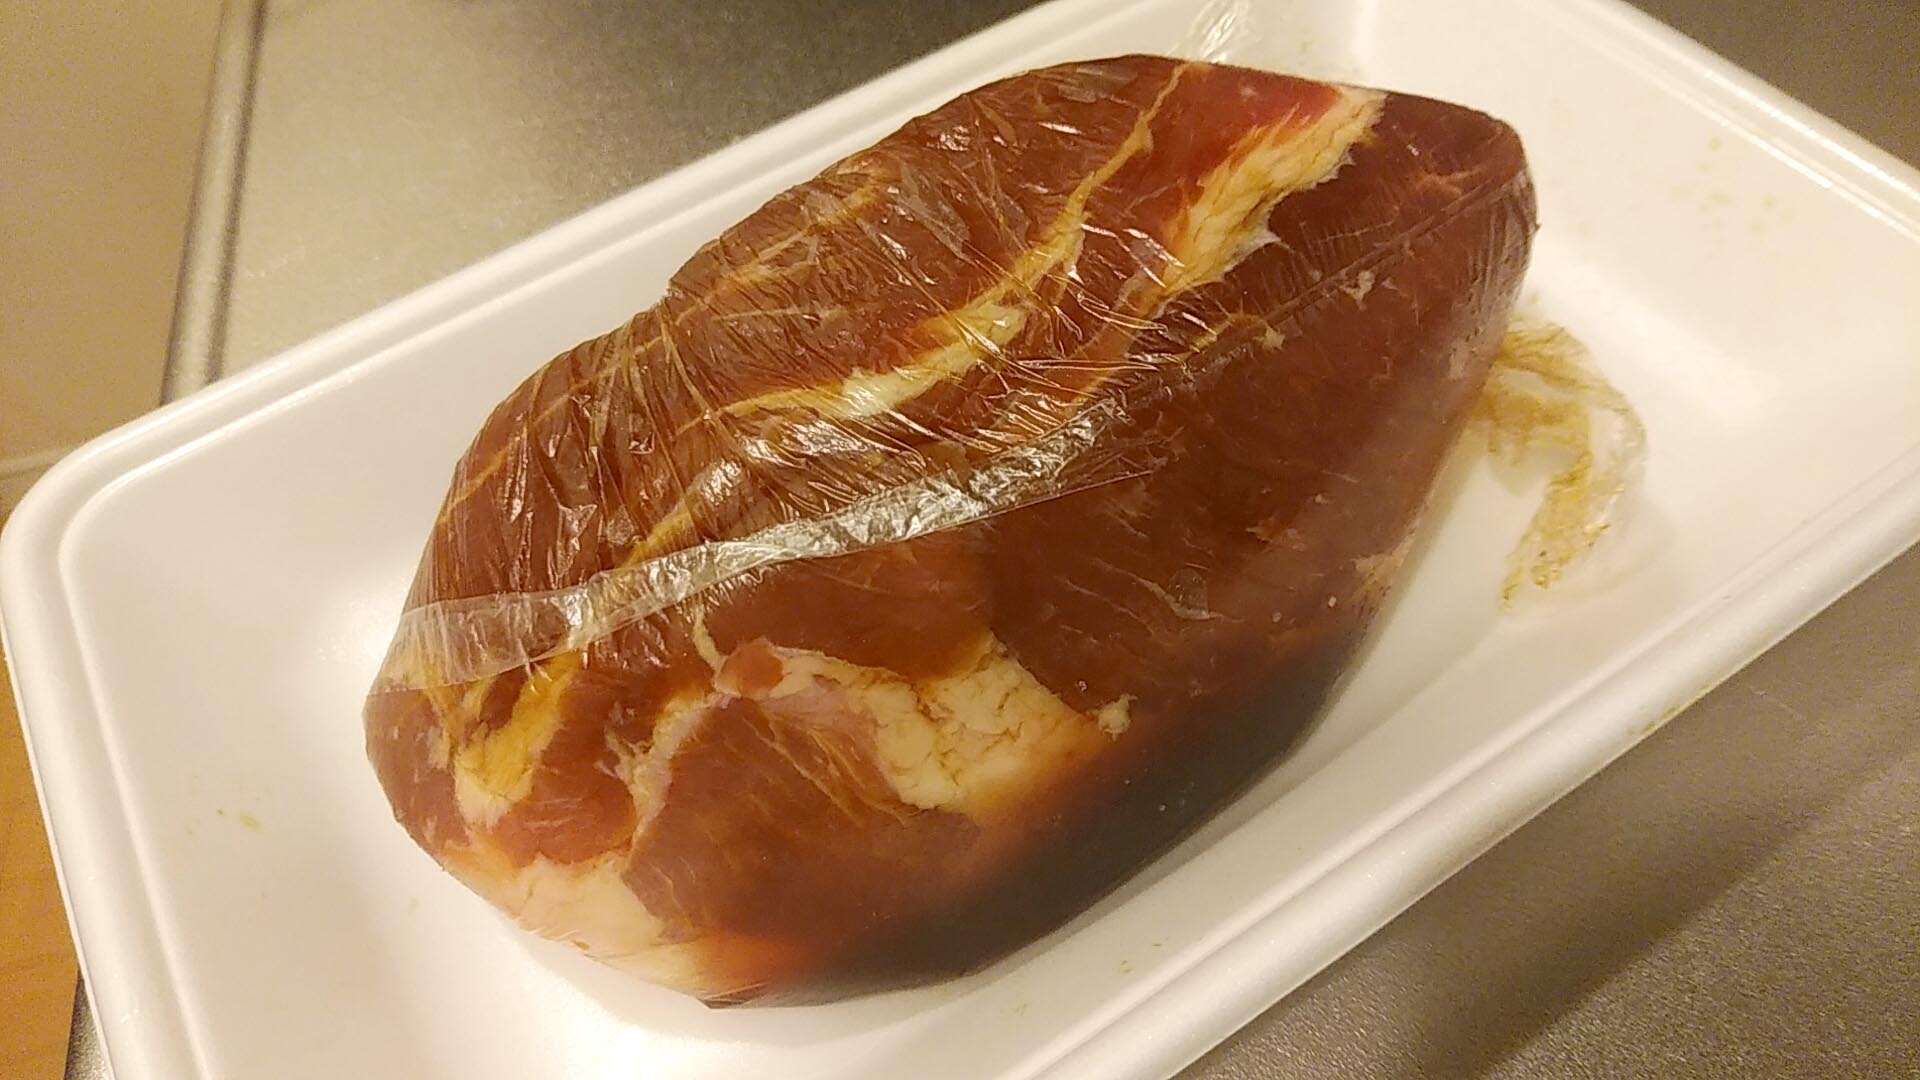 叉焼 焼豚 煮豚 チャーシューは何が違う とりあえず日本で言われているところのチャーシュー を作ってみて それから考えようｗ どの豚肉を使えばいい どう煮込めばいい チャーシューの簡単な作り方 肝臓公司 かんぞうこうし